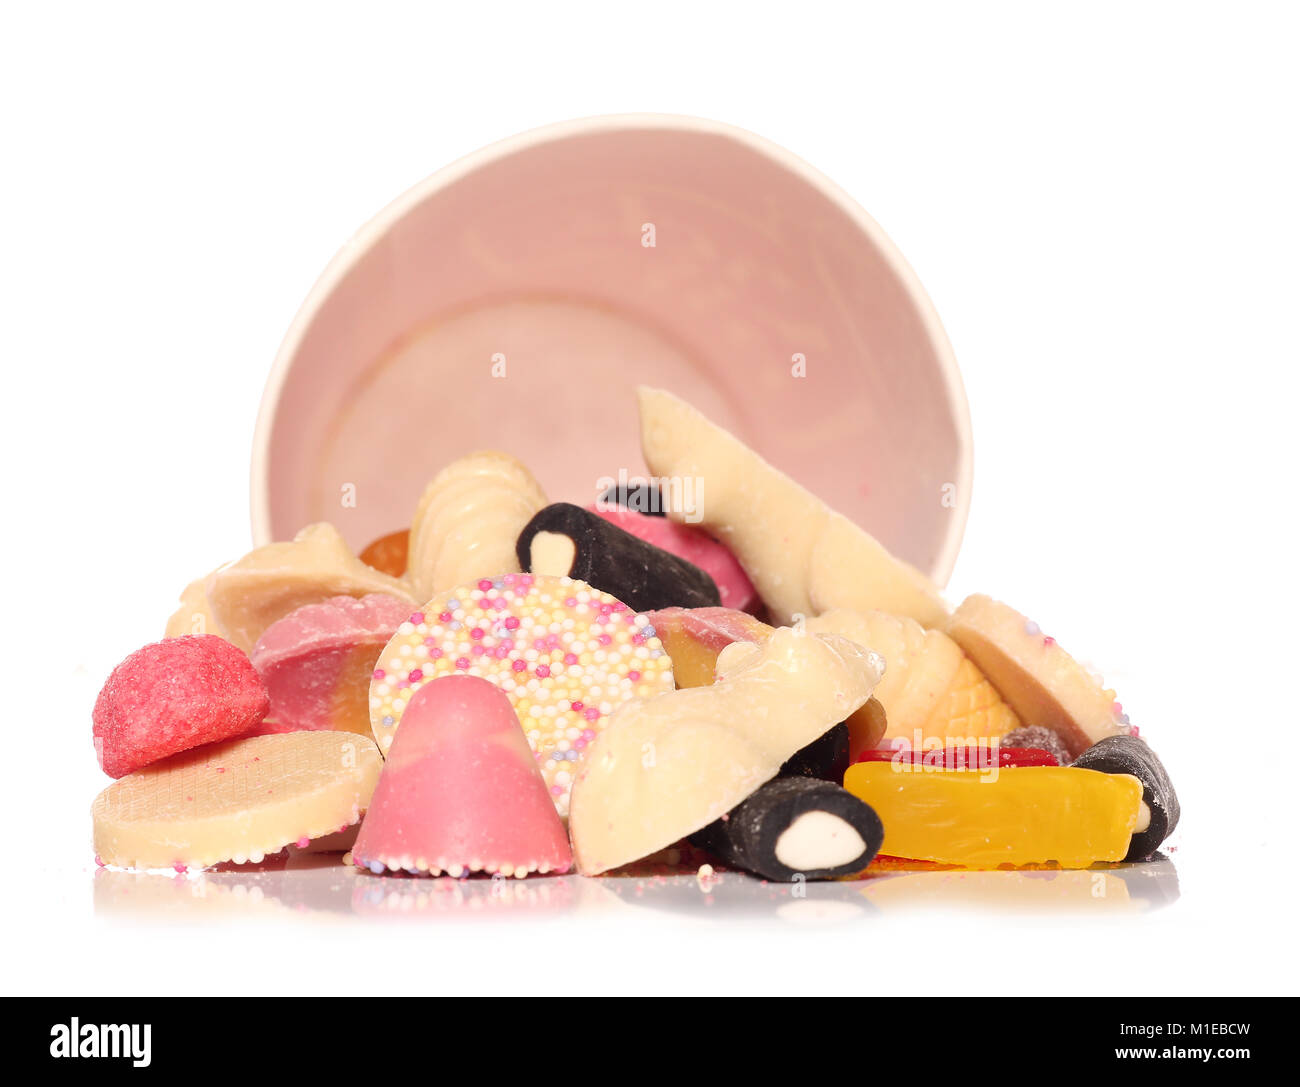 Mischung aus aussuchen, Süßigkeiten studio Ausschnitt Stockfoto